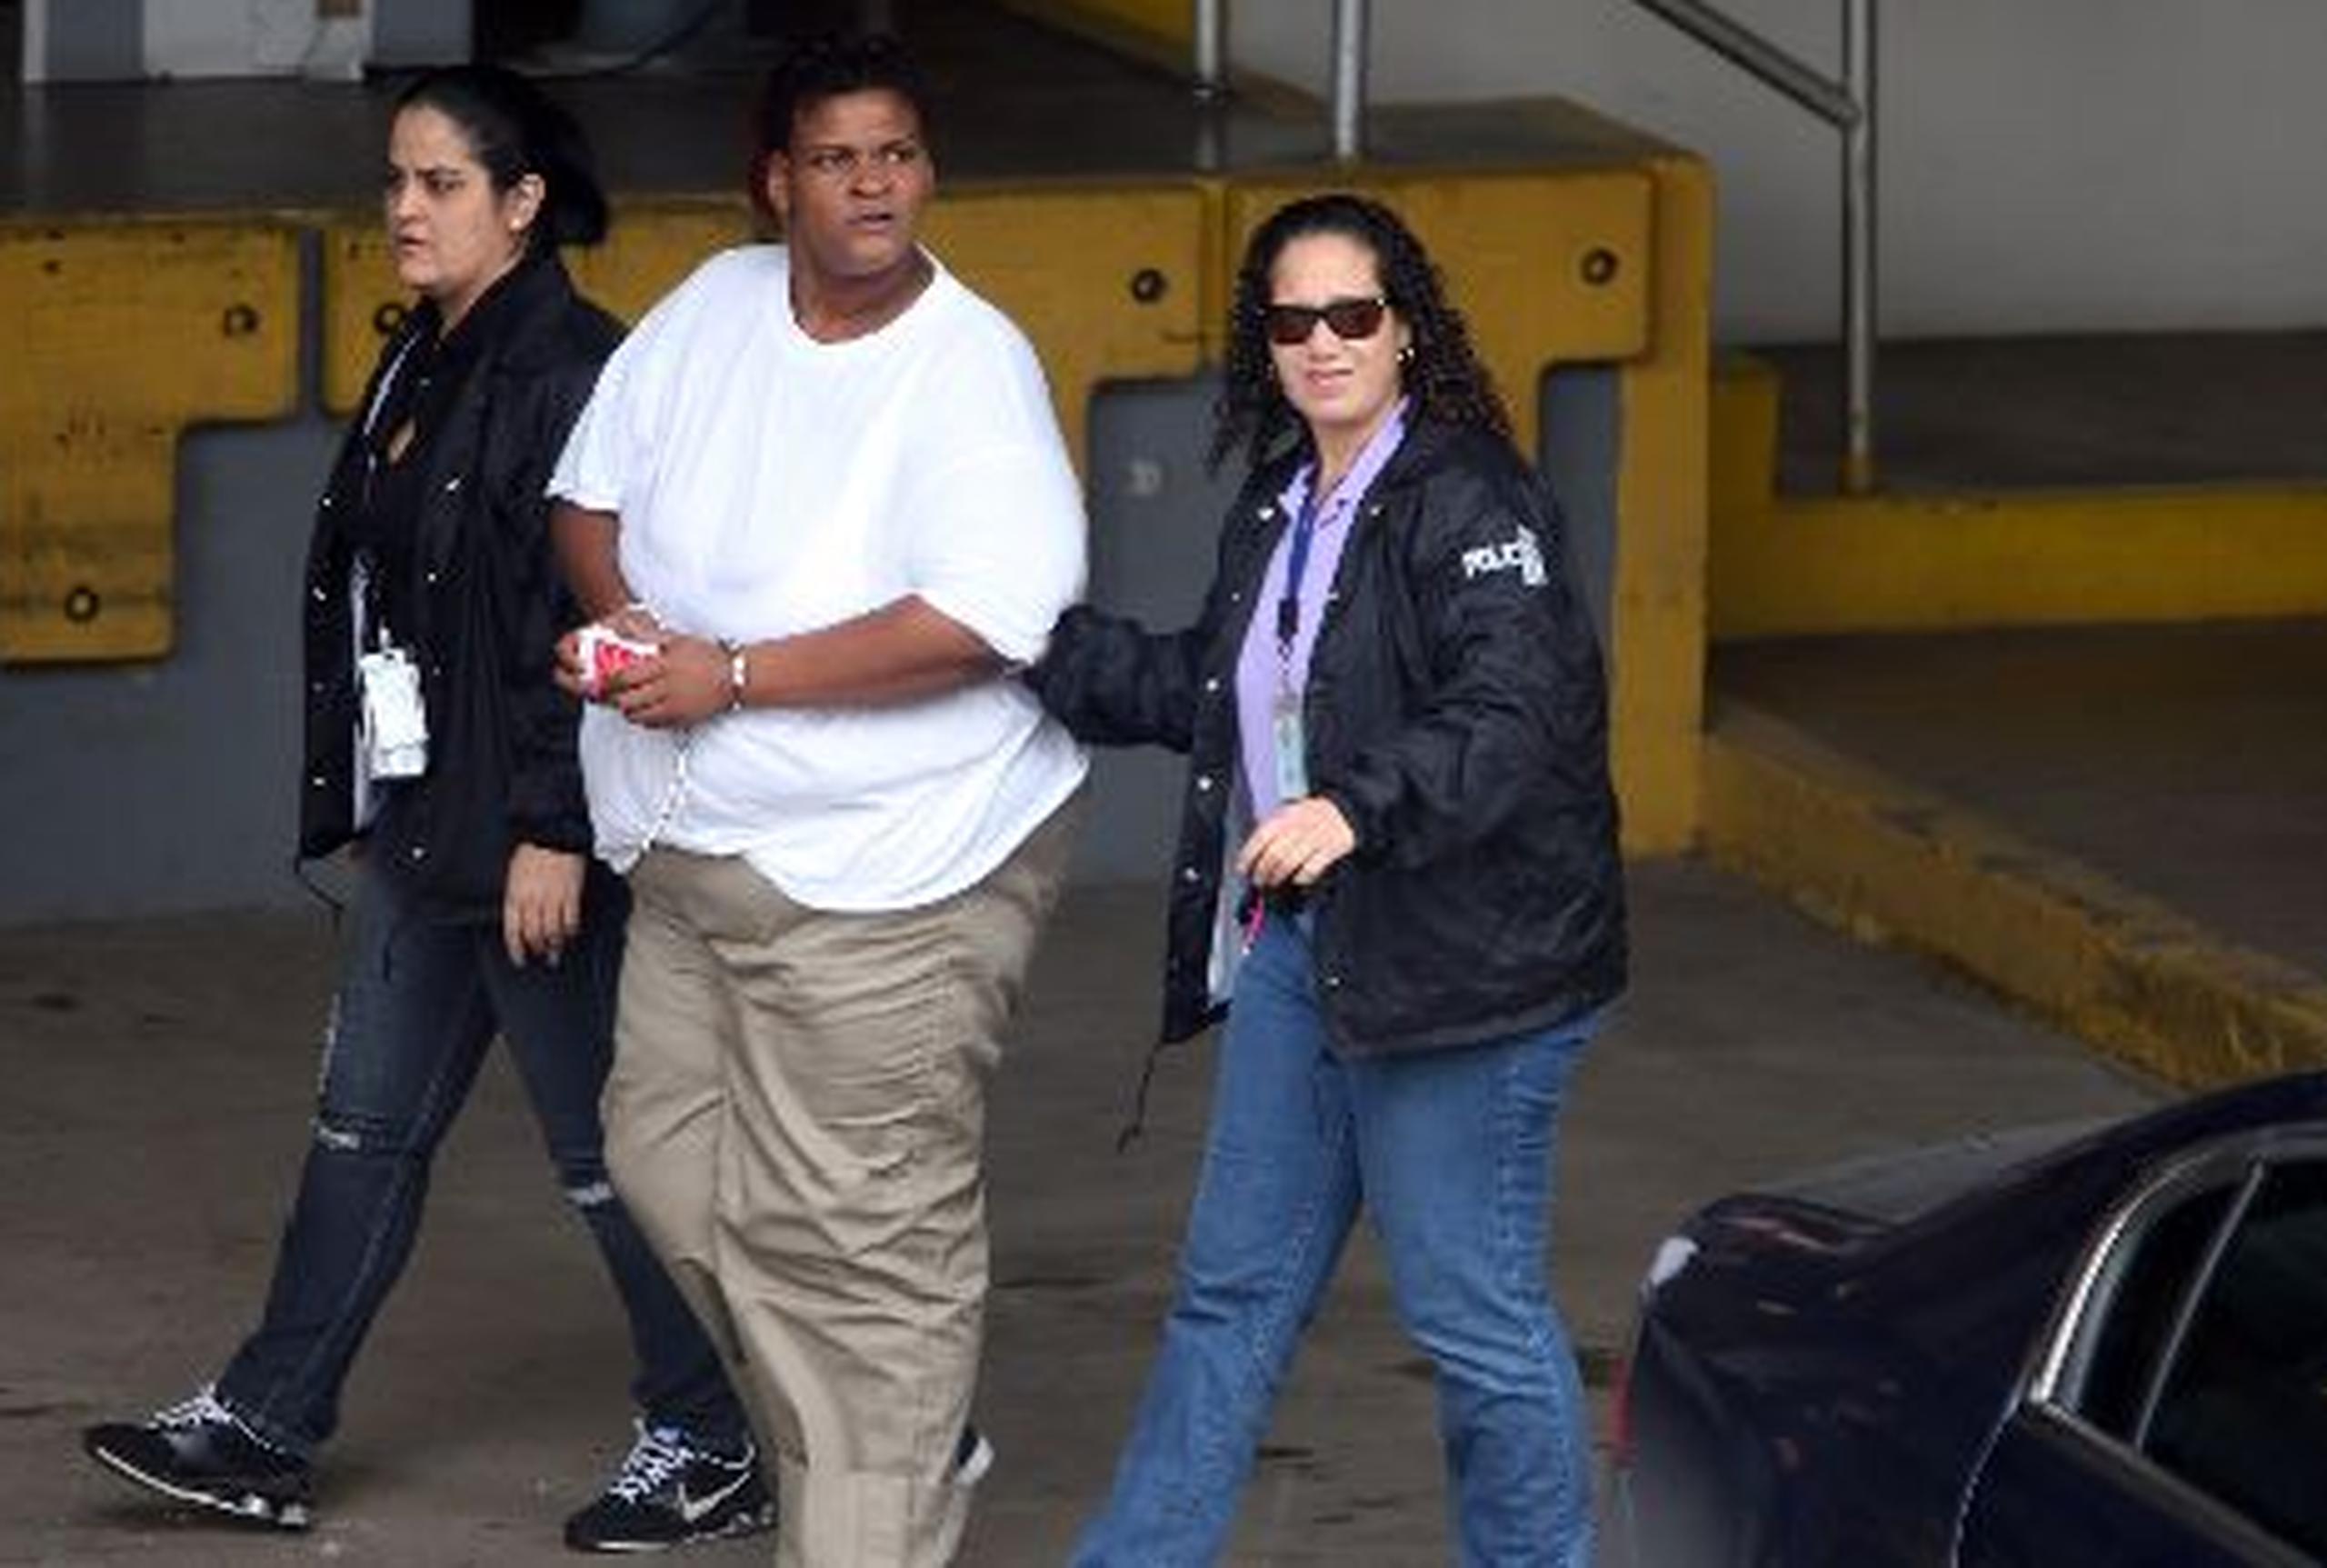 La acusada comparecerá mañana, jueves, a una vista de detención ante el magistrado federal Marcos López. (Archivo)